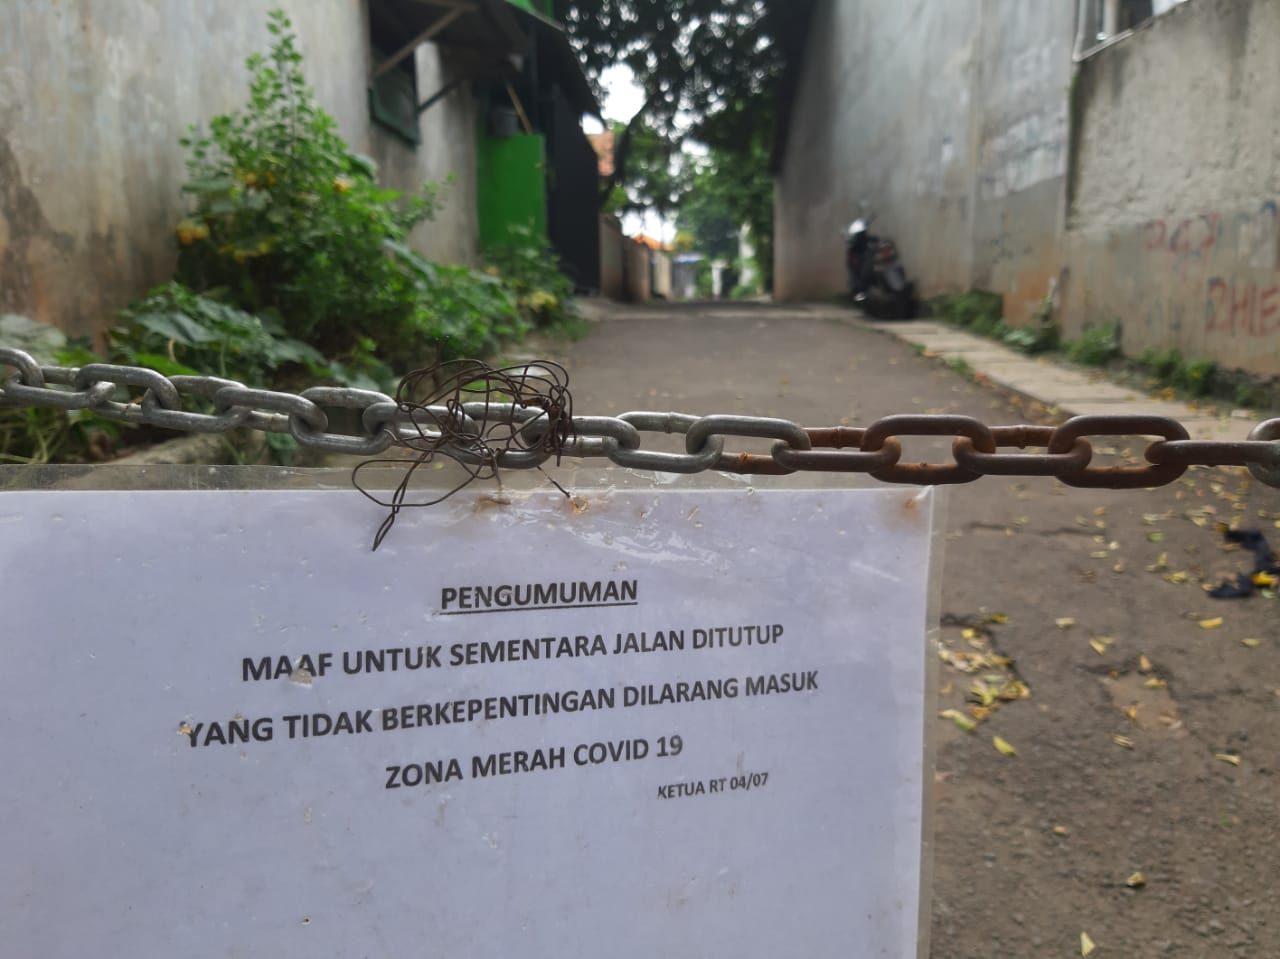 	Lingkungan RT 04/07 Kelurahan Pamulang Barat, Tangerang Selatan telah menerapkan pembatasan wilayah atau Lockdown berskala mikro, Tangsel, Rabu, 23 Juni 2021.